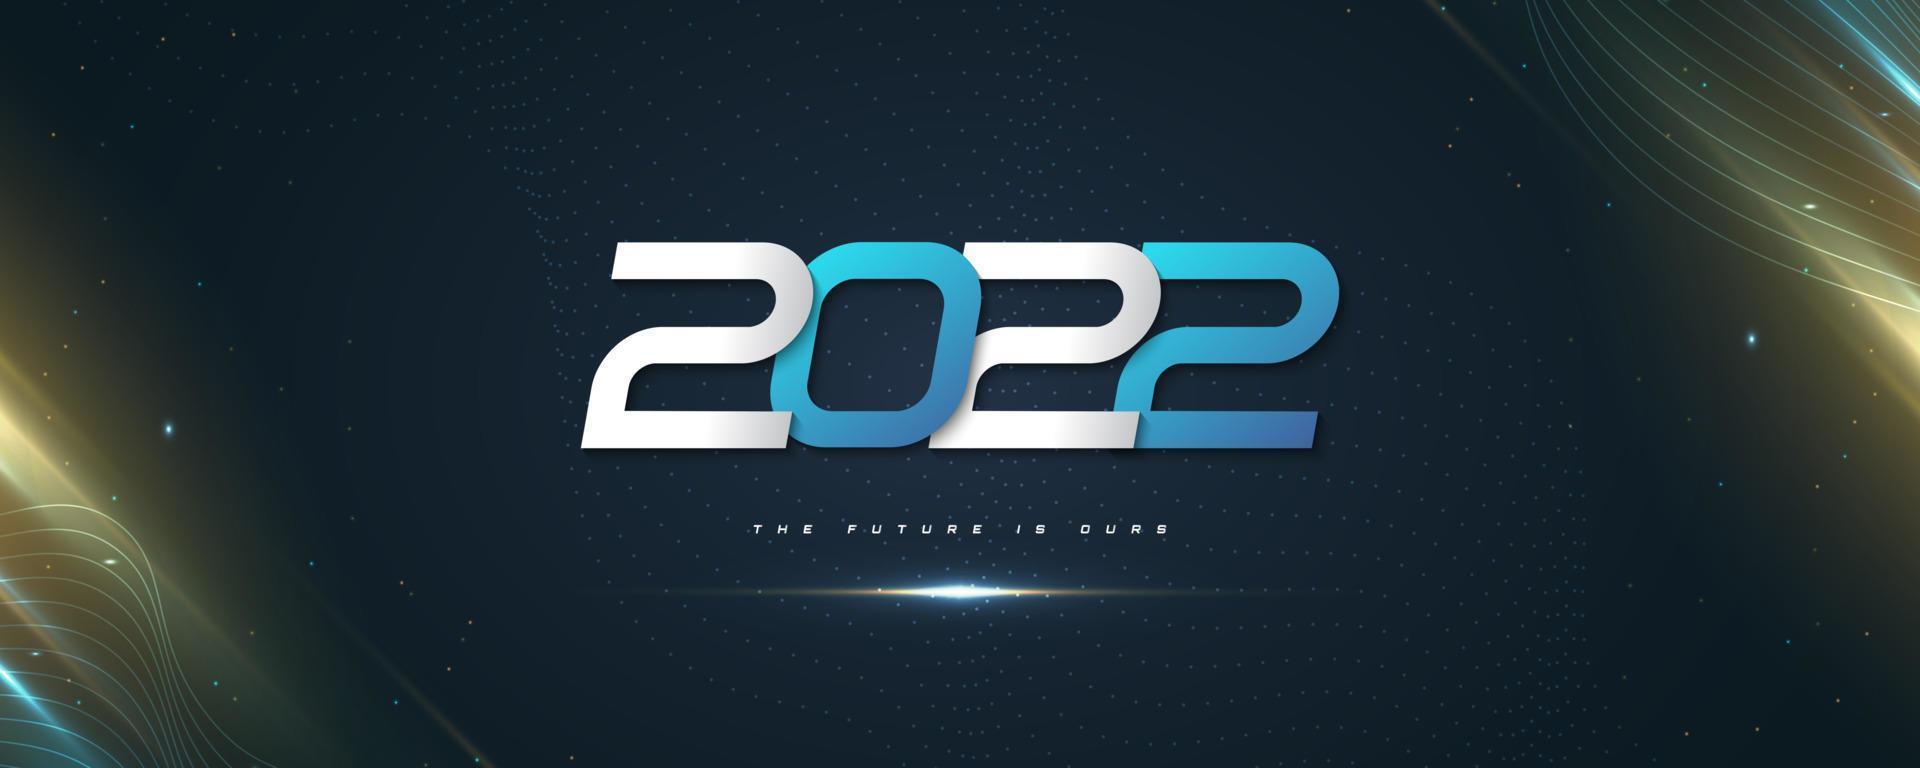 gelukkig nieuwjaar 2022 bannerontwerp met blauwe en witte cijfers in futuristische stijl. 2022 logo of symbool. vakantie vectorillustraties vector